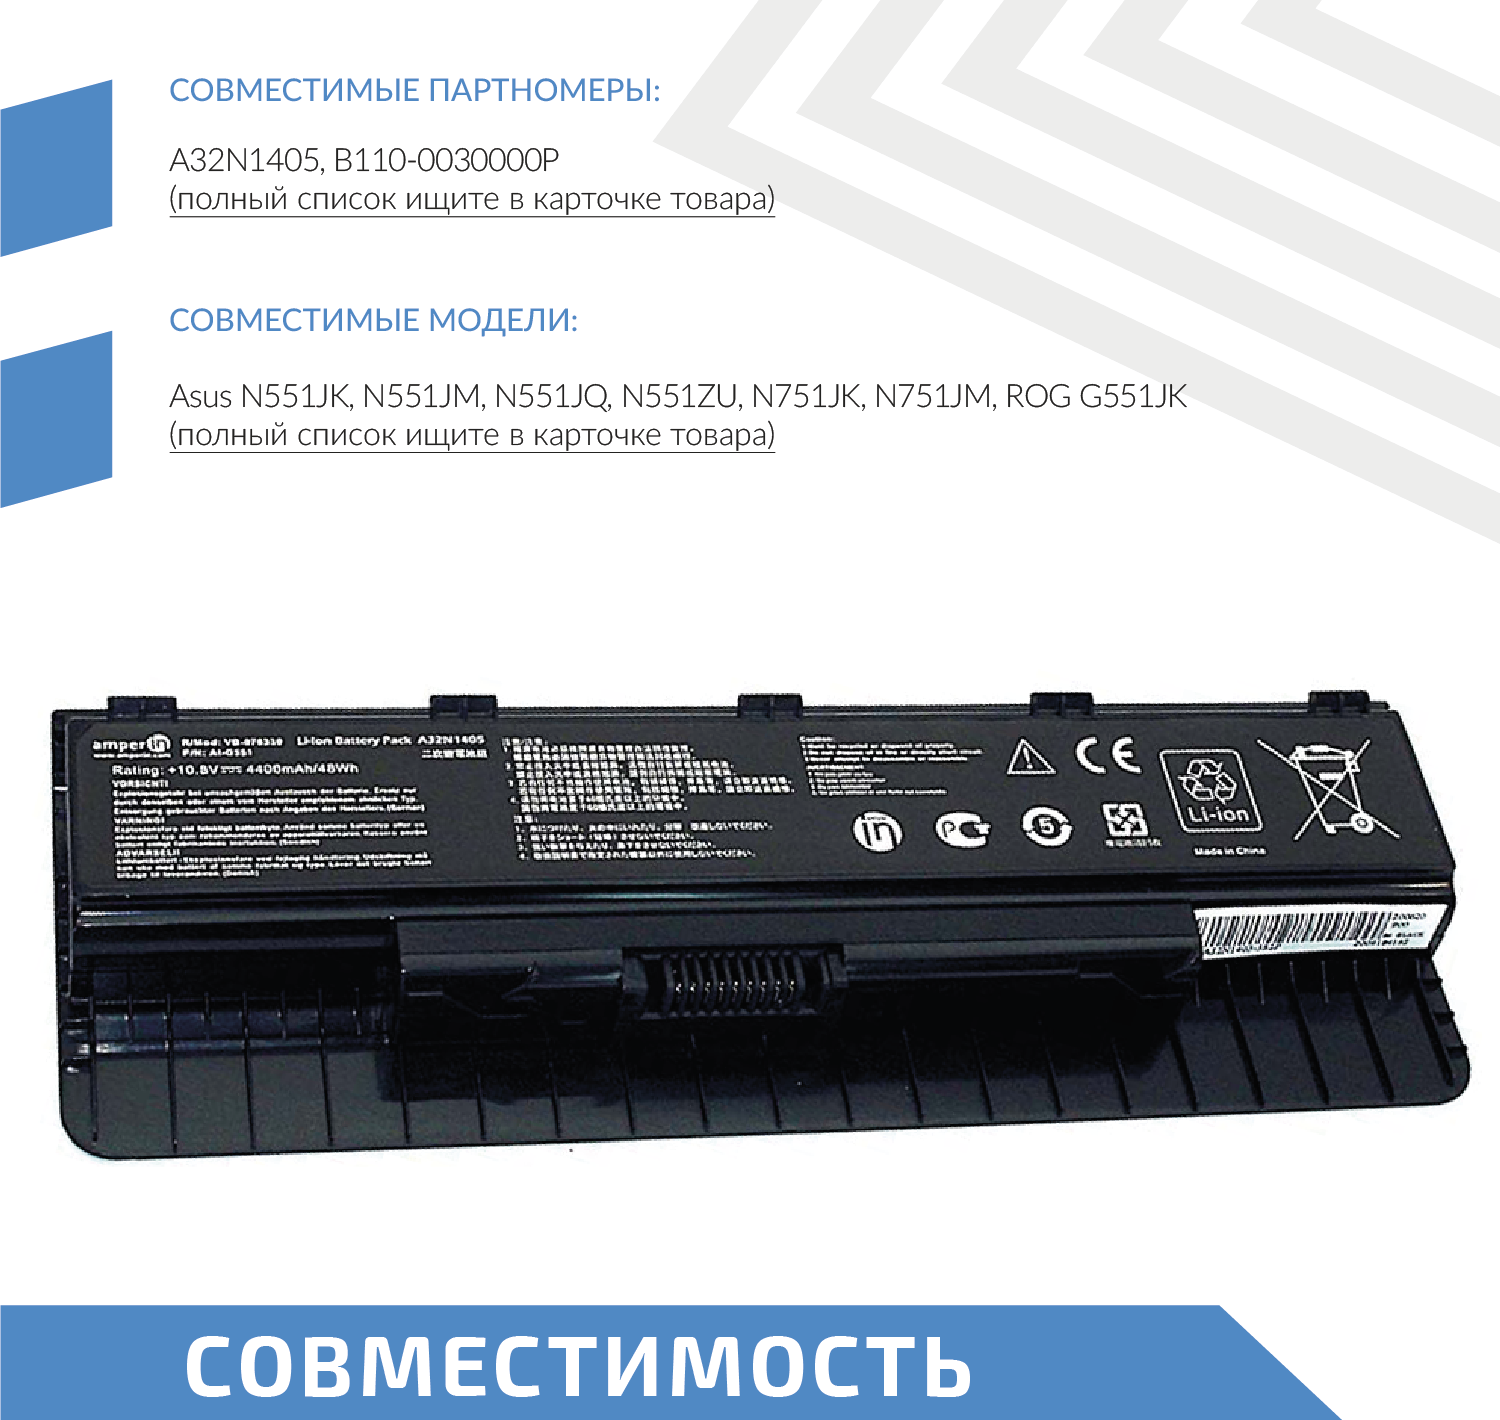 Аккумулятор (АКБ аккумуляторная батарея) Amperin AI-G551 для ноутбука Asus G551 (A32N1405) 108В 4400мАч